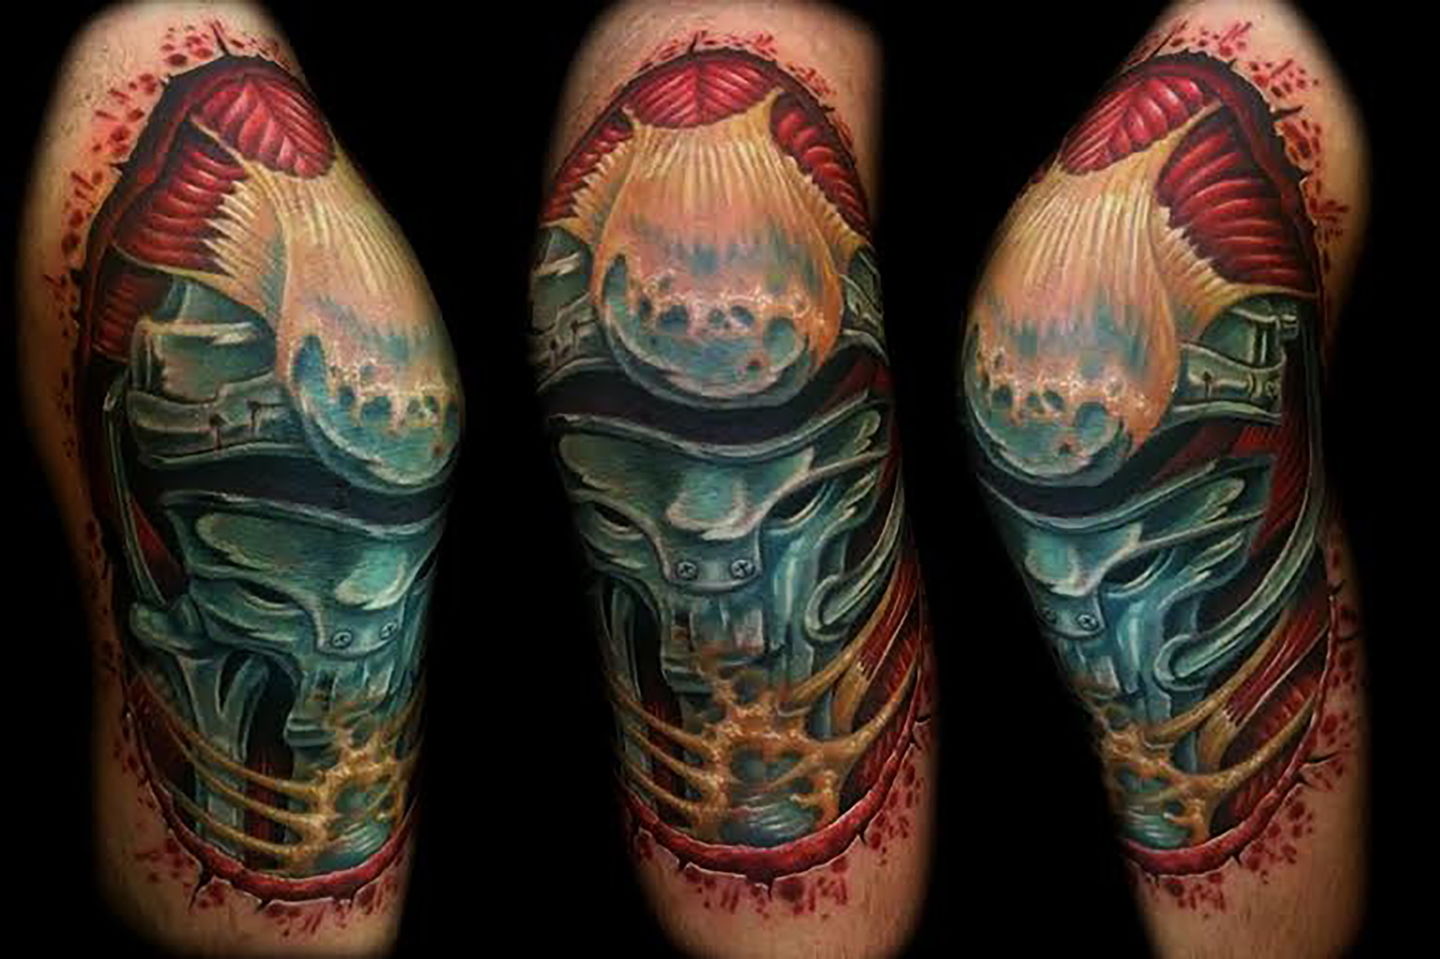 Las-vegas-tattoo-artist_joe-riley_biomech-knee-tattoo